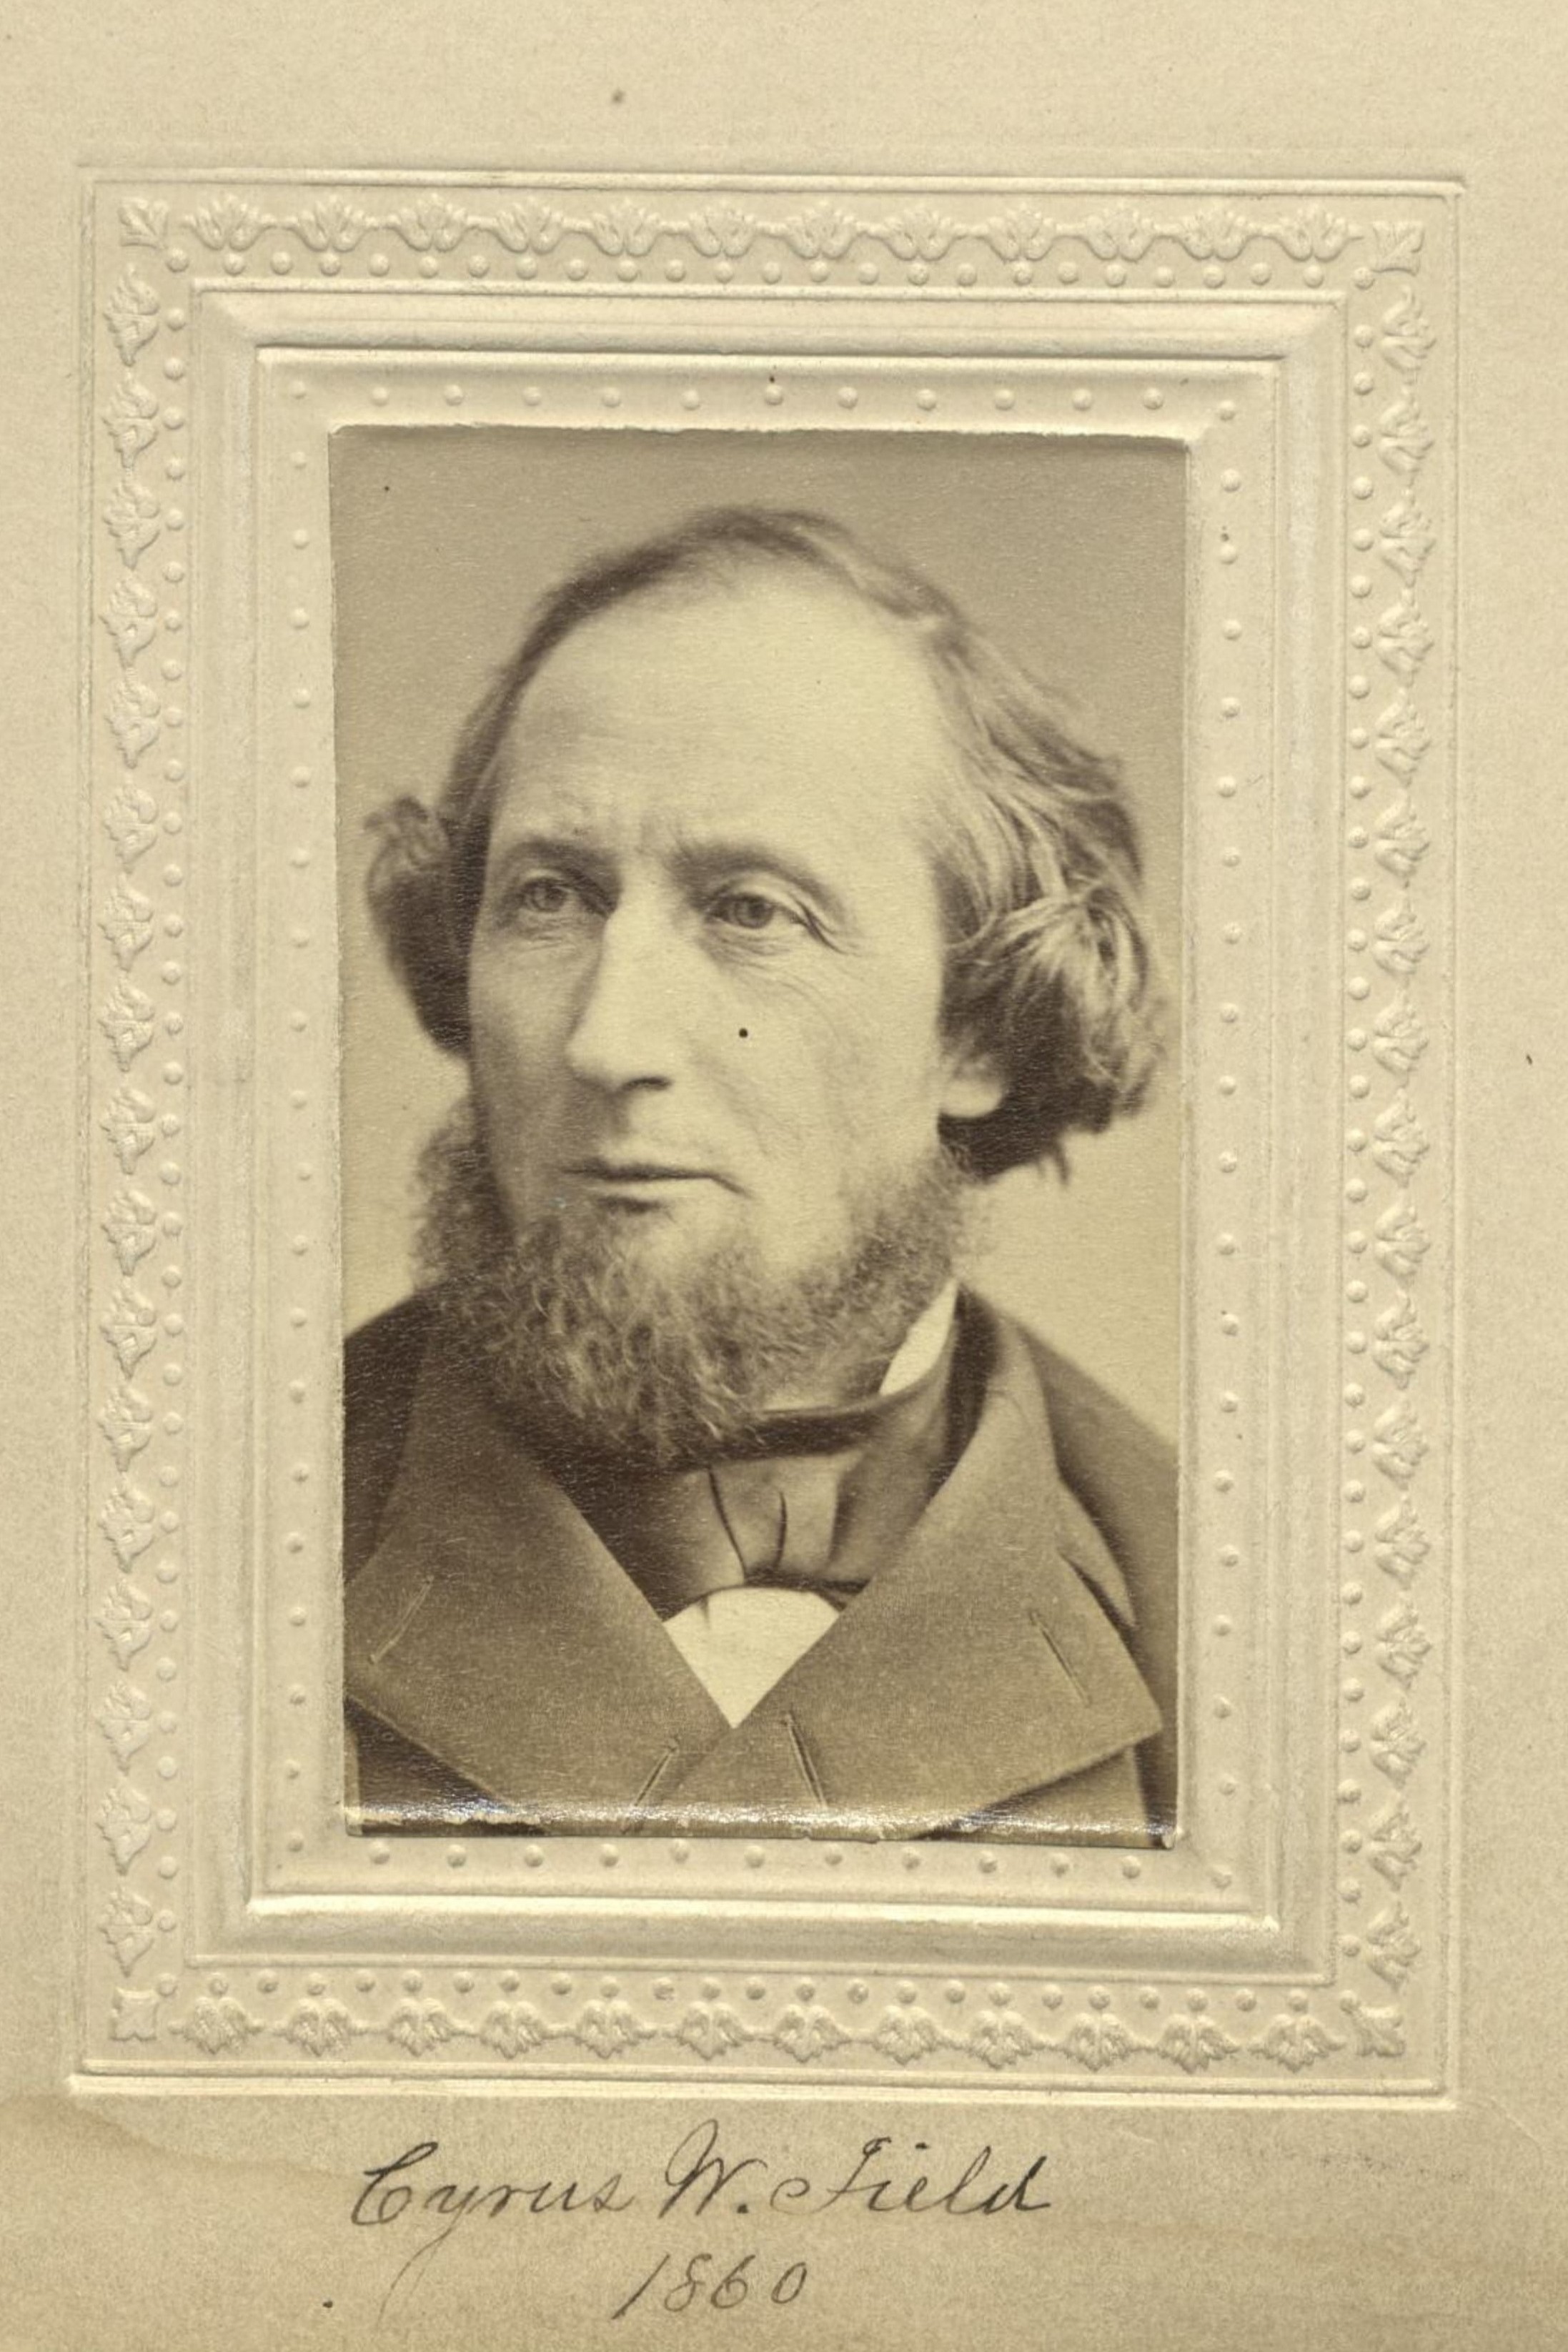 Member portrait of Cyrus W. Field